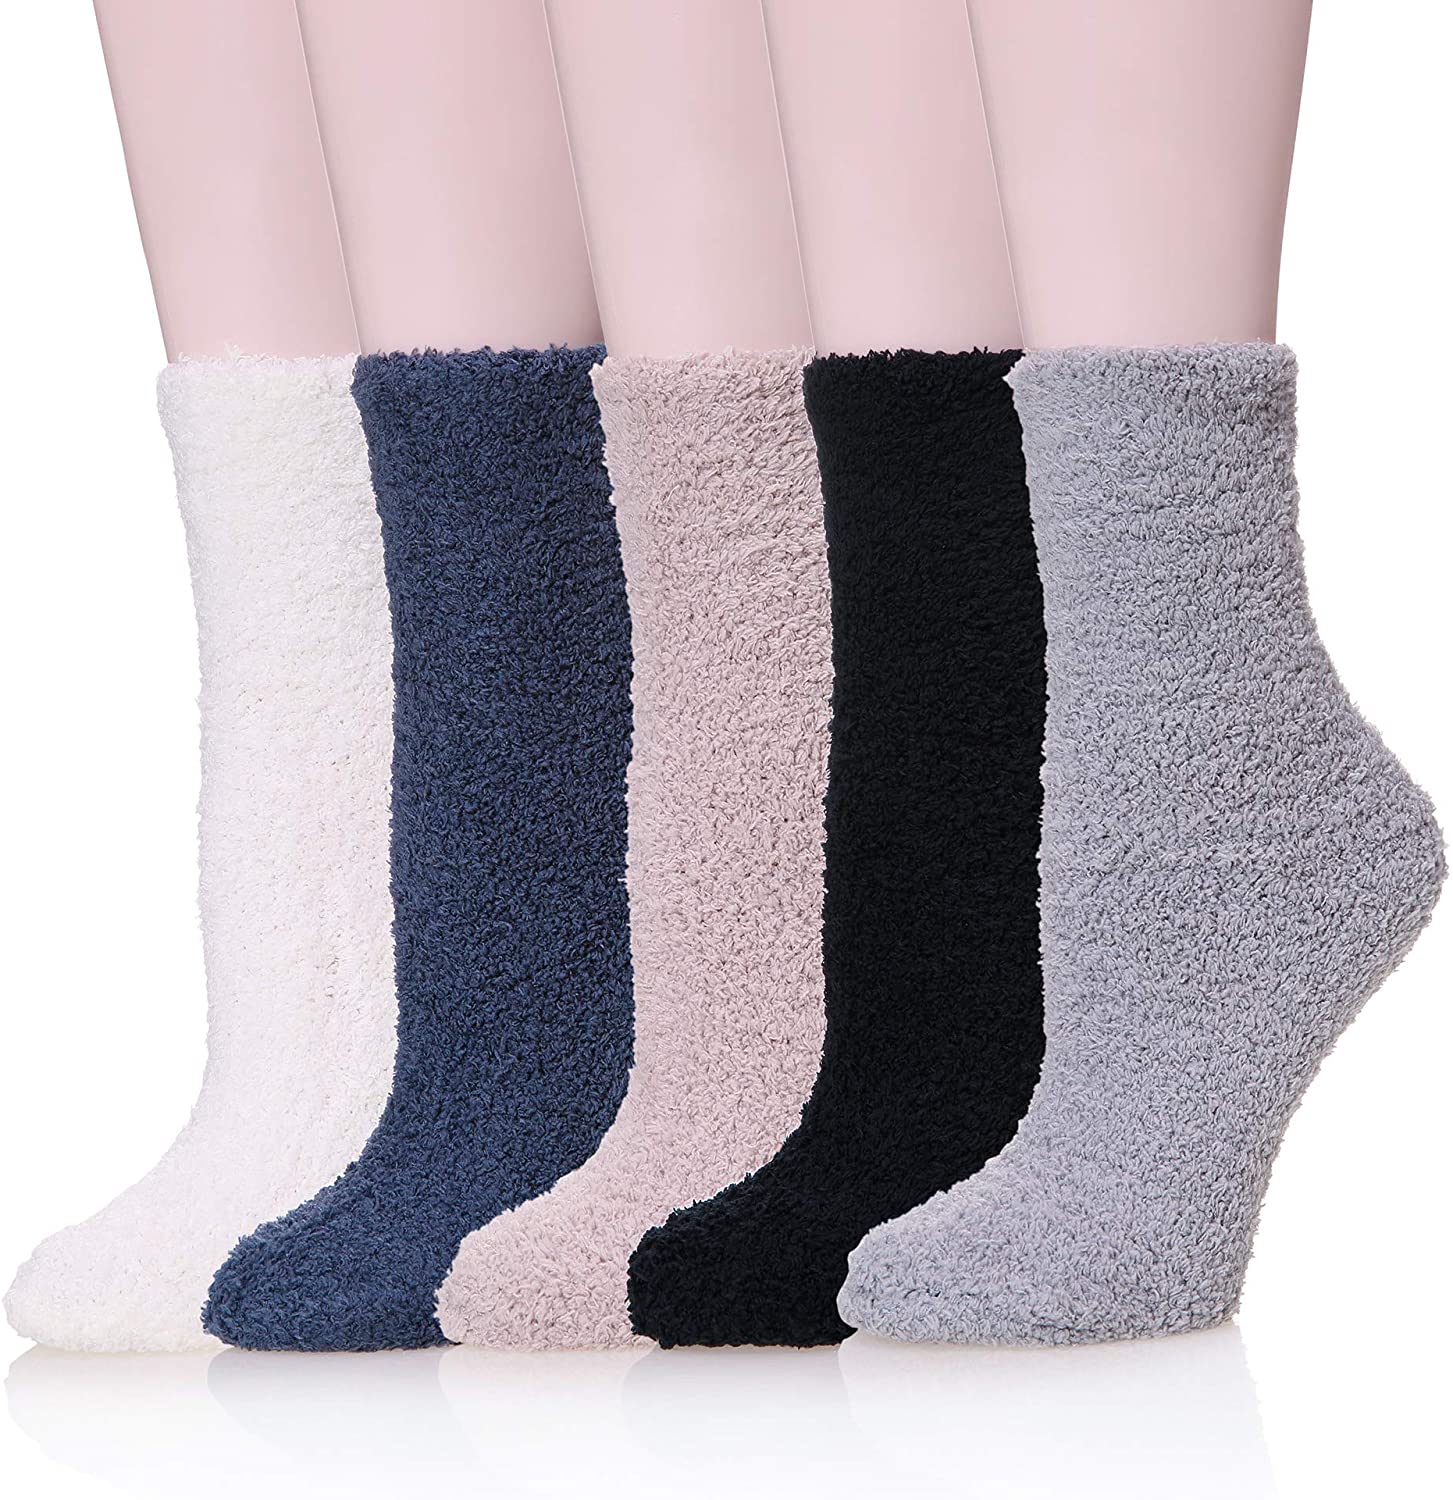 Dosoni Plush Velvet Slipper Socks, 5-Pack